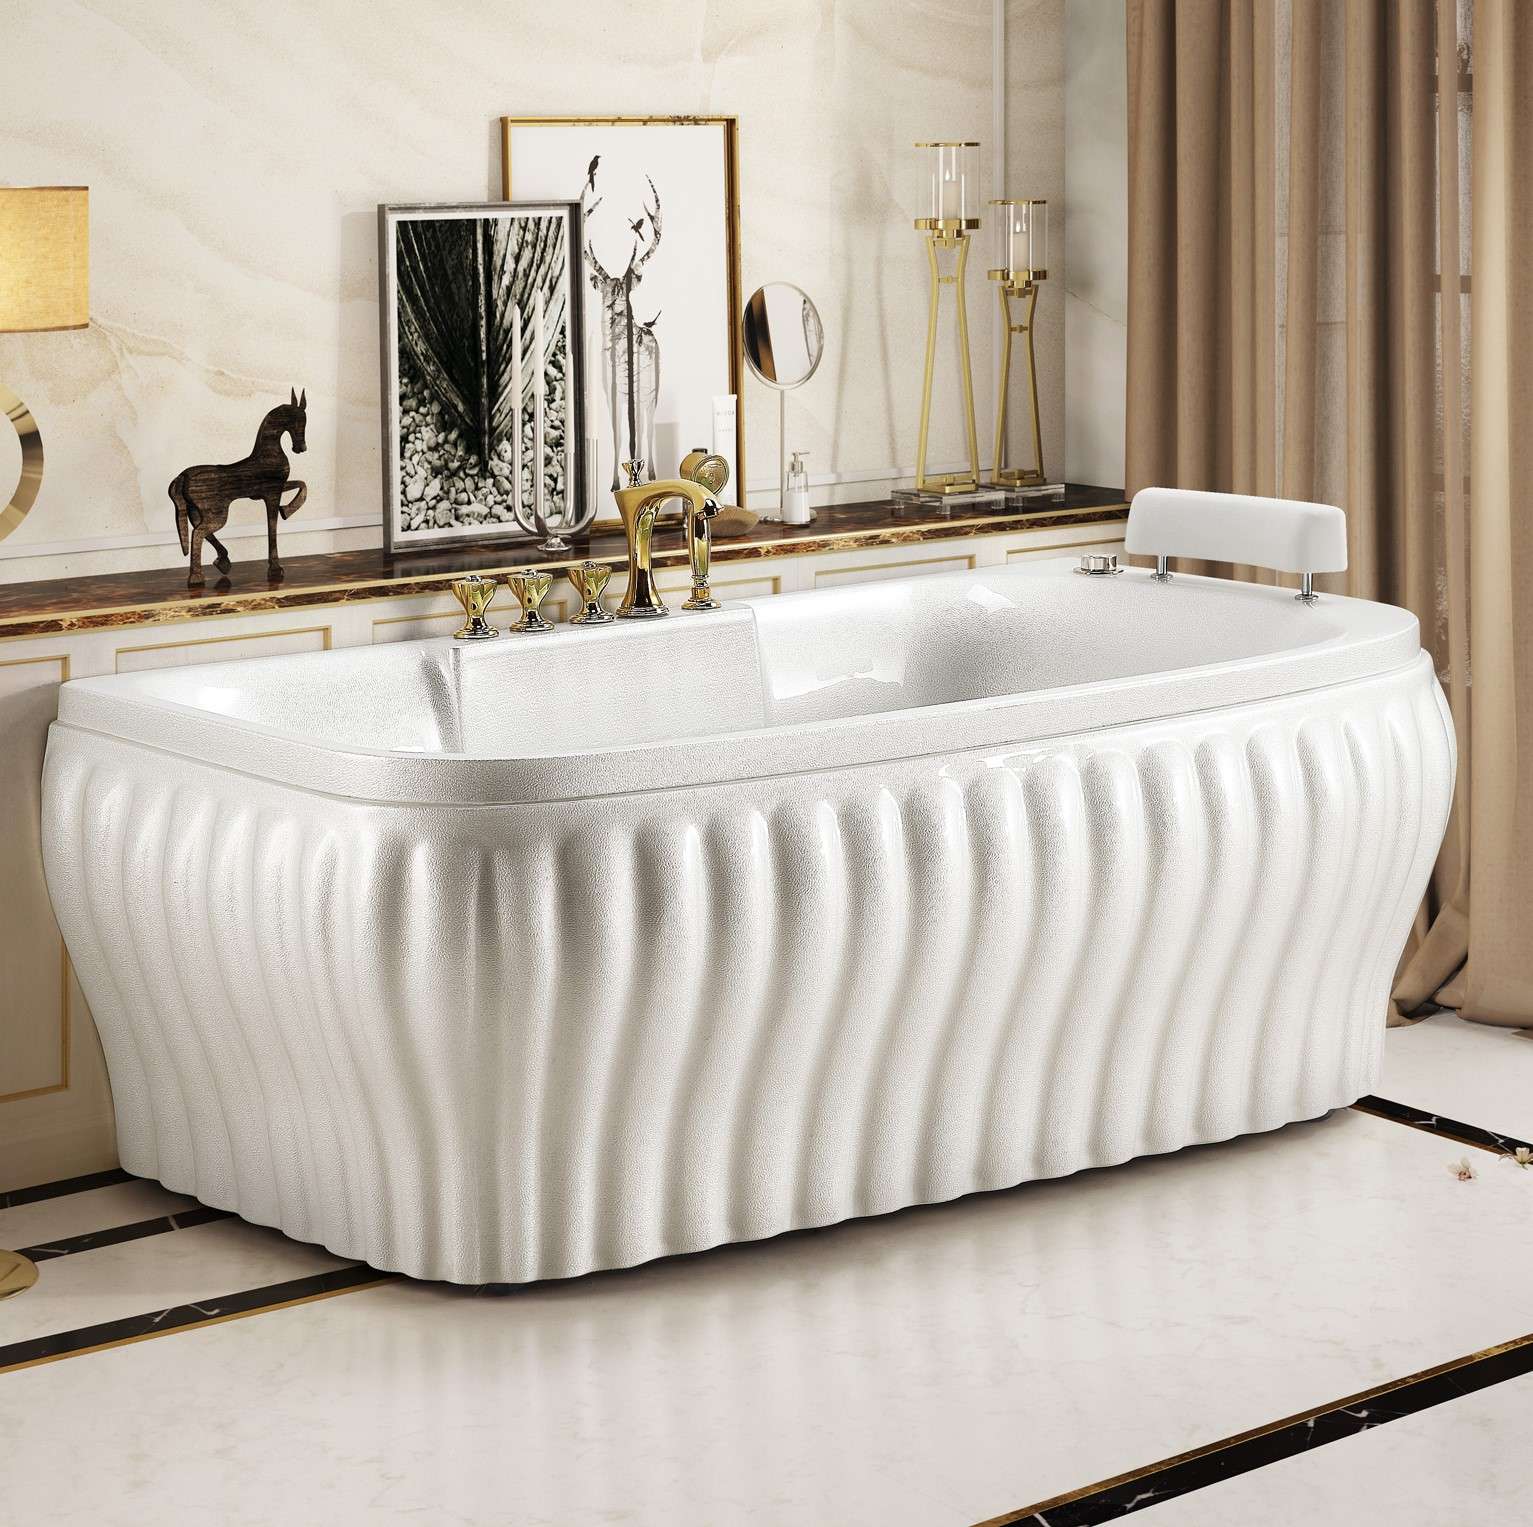 珍珠板亚克力珠光板按摩浴缸 现代欧式轻奢家用冲浪按摩独立浴缸